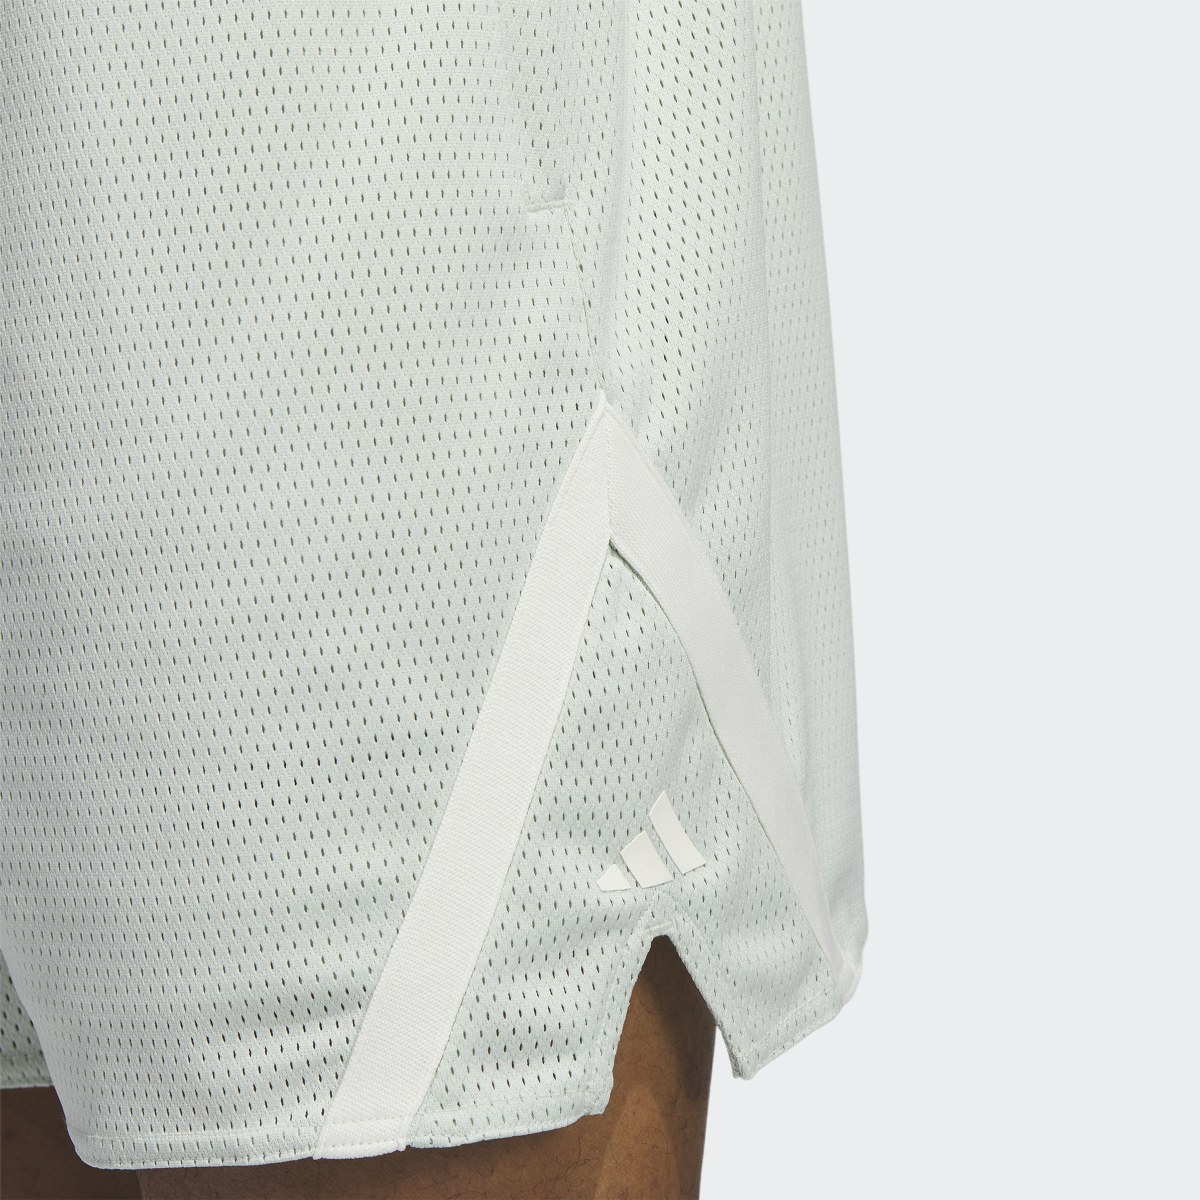 Adidas Select Summer Shorts. 6